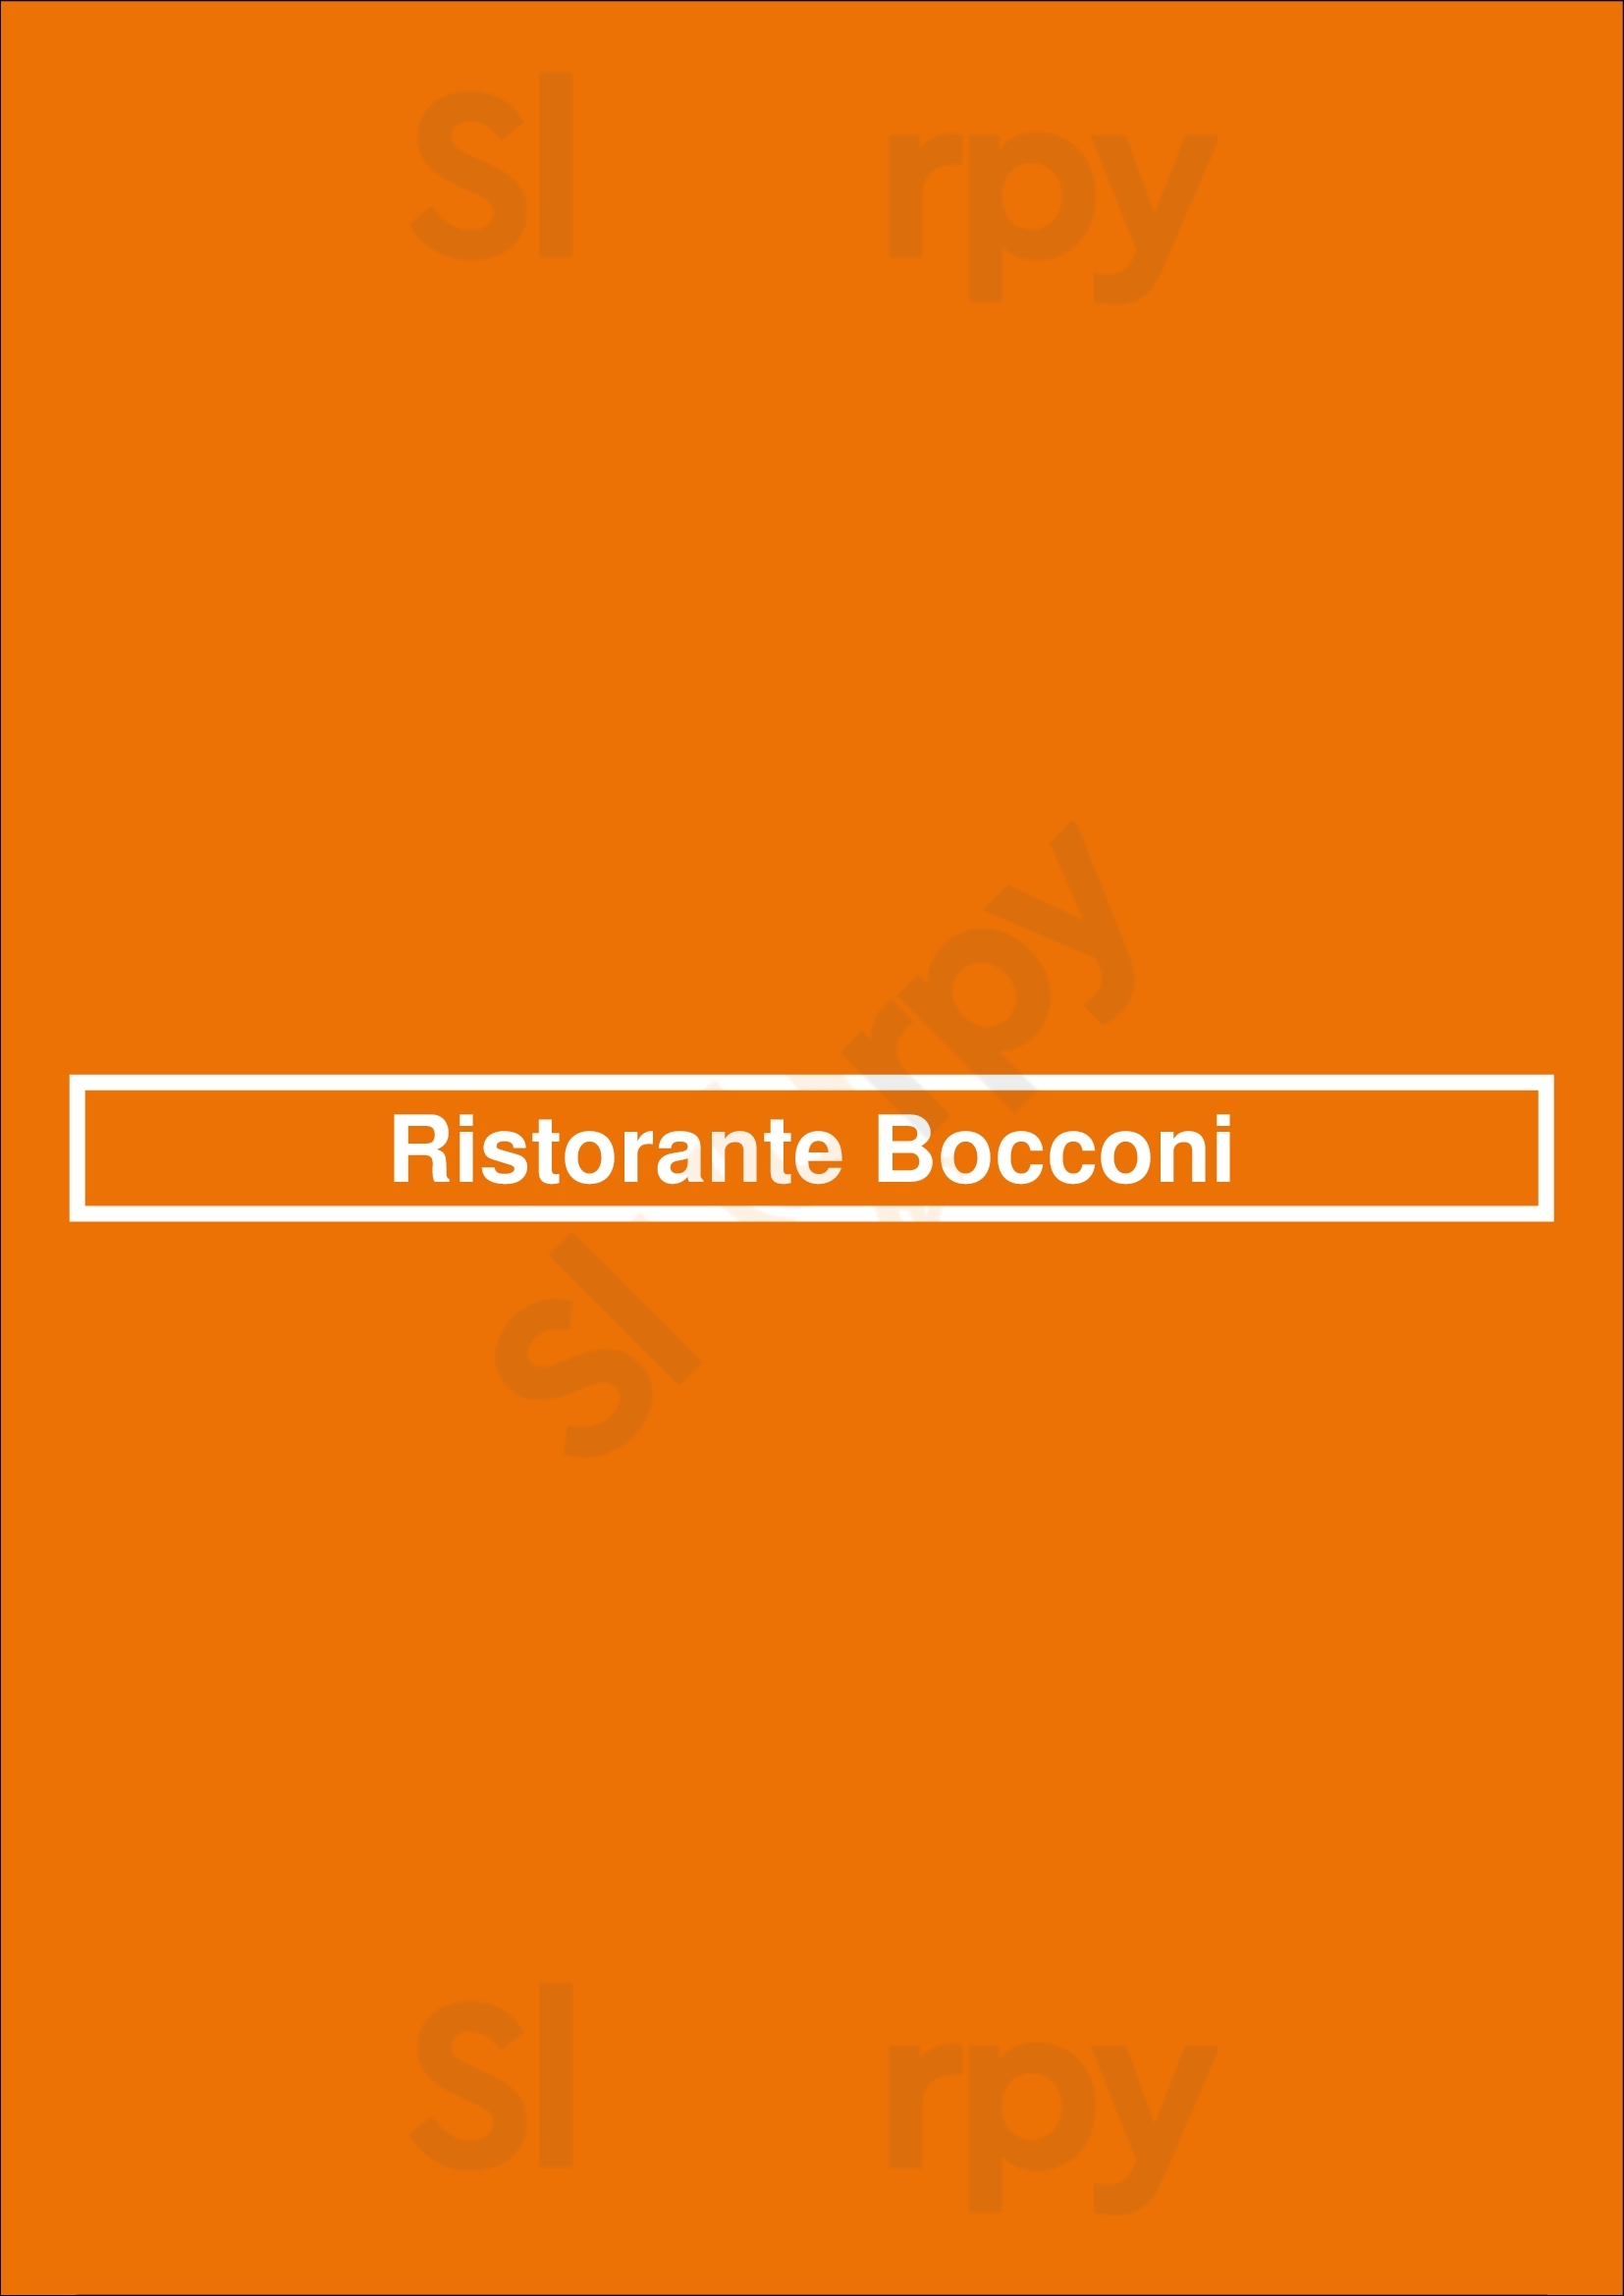 Ristorante Bocconi Bruxelles Menu - 1